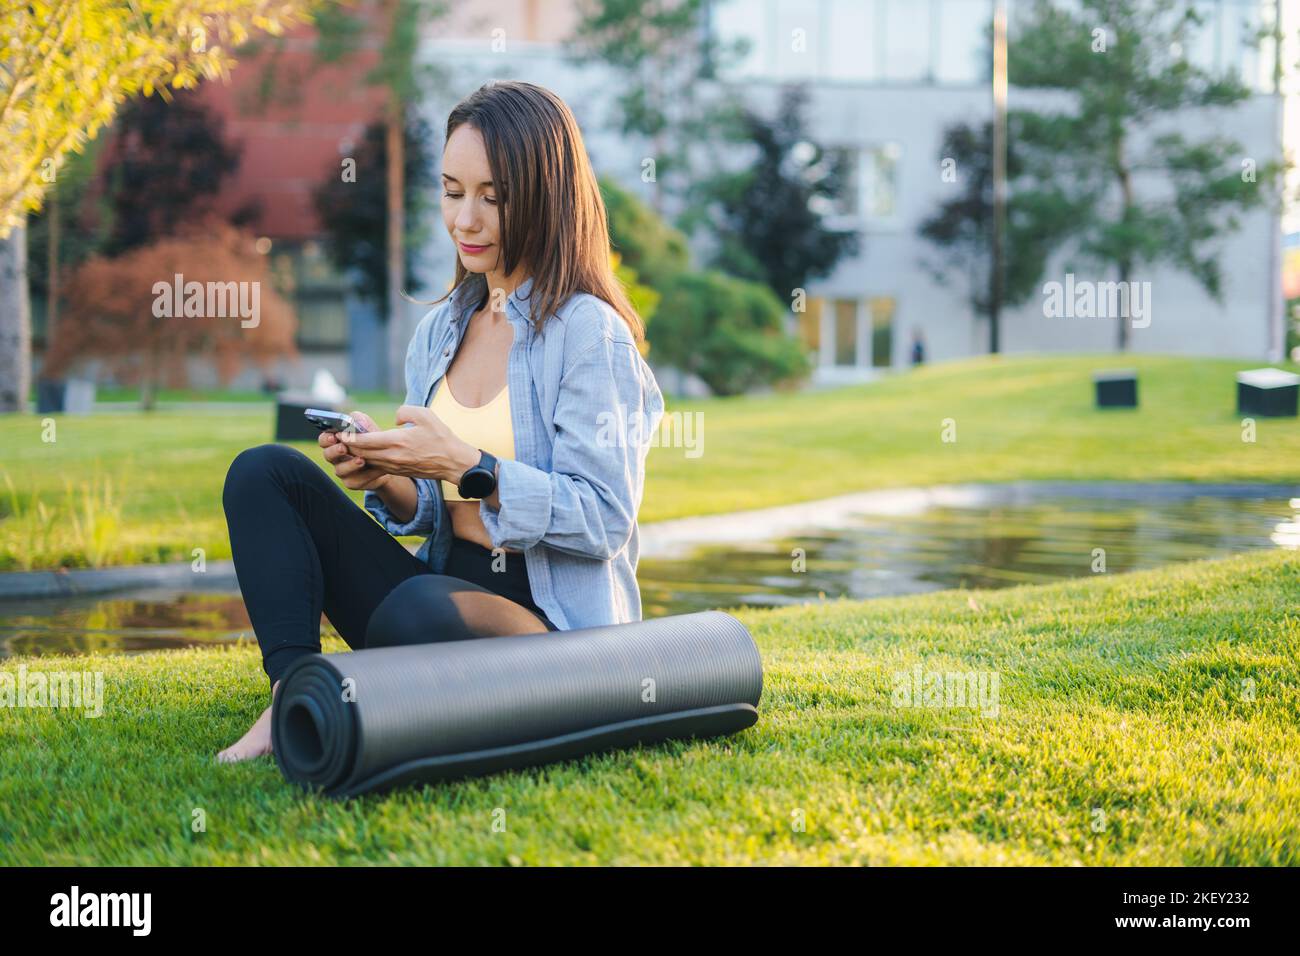 Jolie femme caucasienne assise sur une herbe verte avec un smartphone près du tapis de fitness. Concept de mode de vie sain et exercice sur un air frais. Femme de fitness Banque D'Images